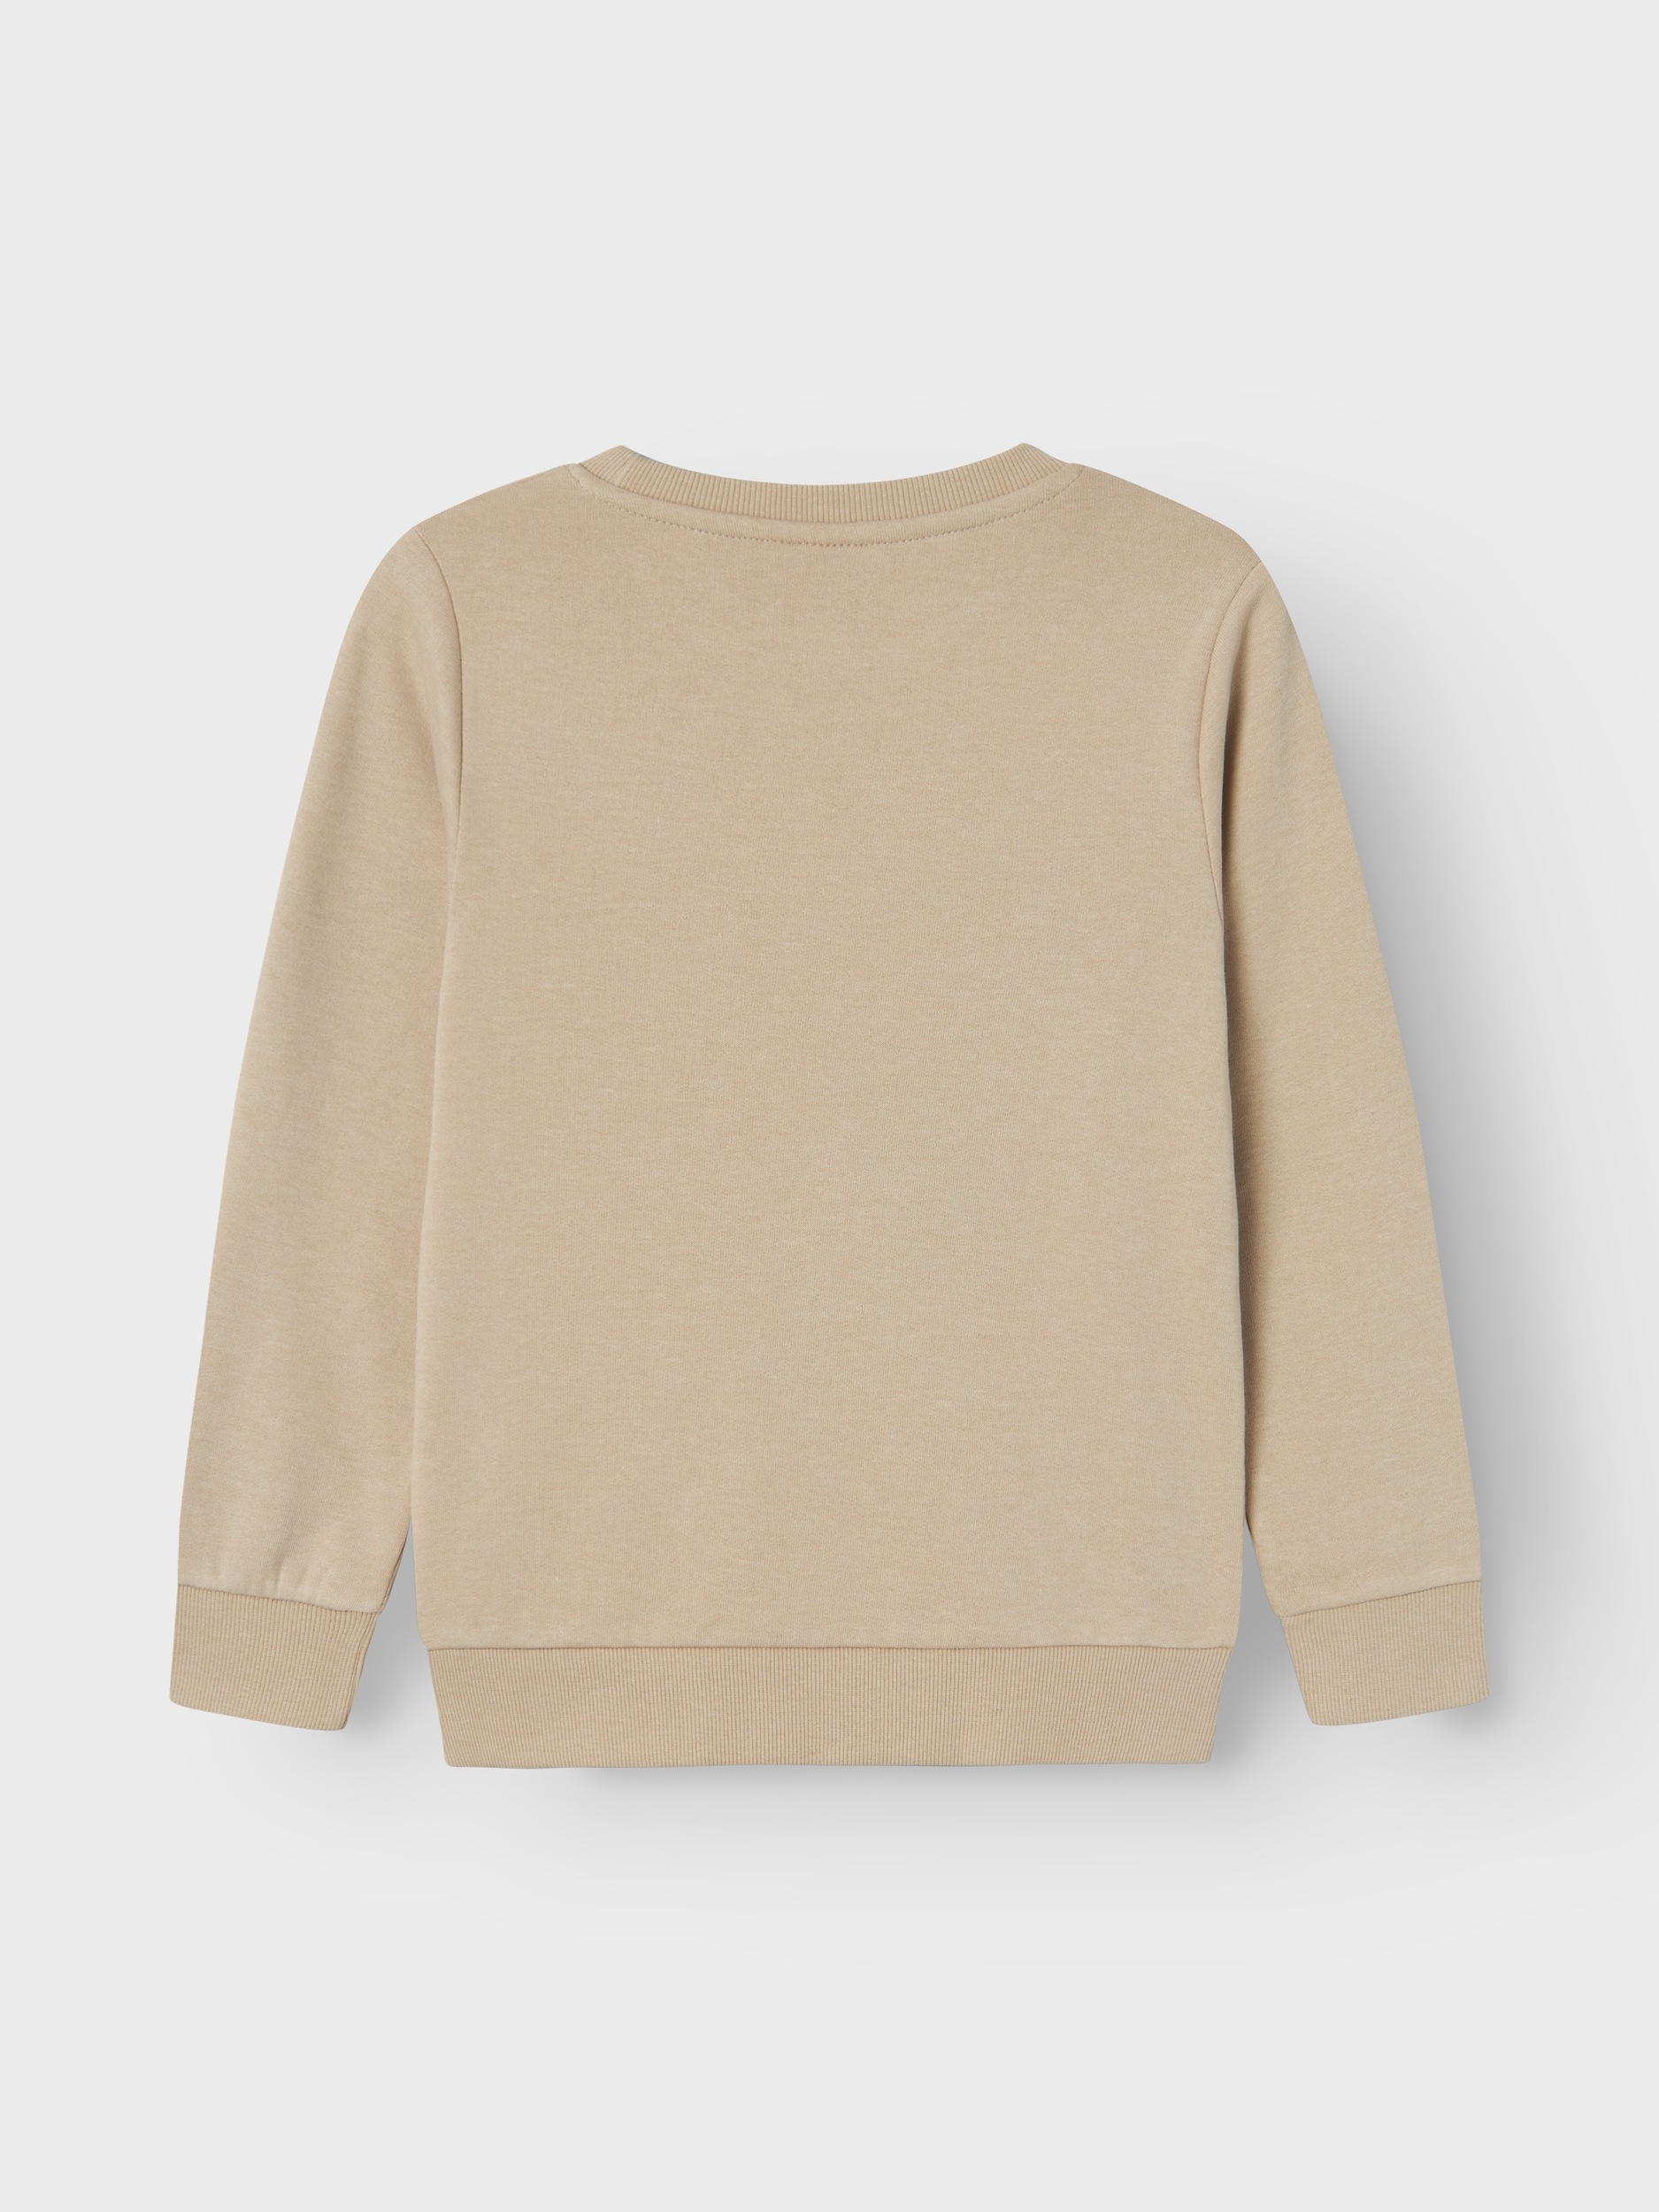 bestellen NOOS« It Sweatshirt online SWEAT Name LS BRU »NKMVIMO